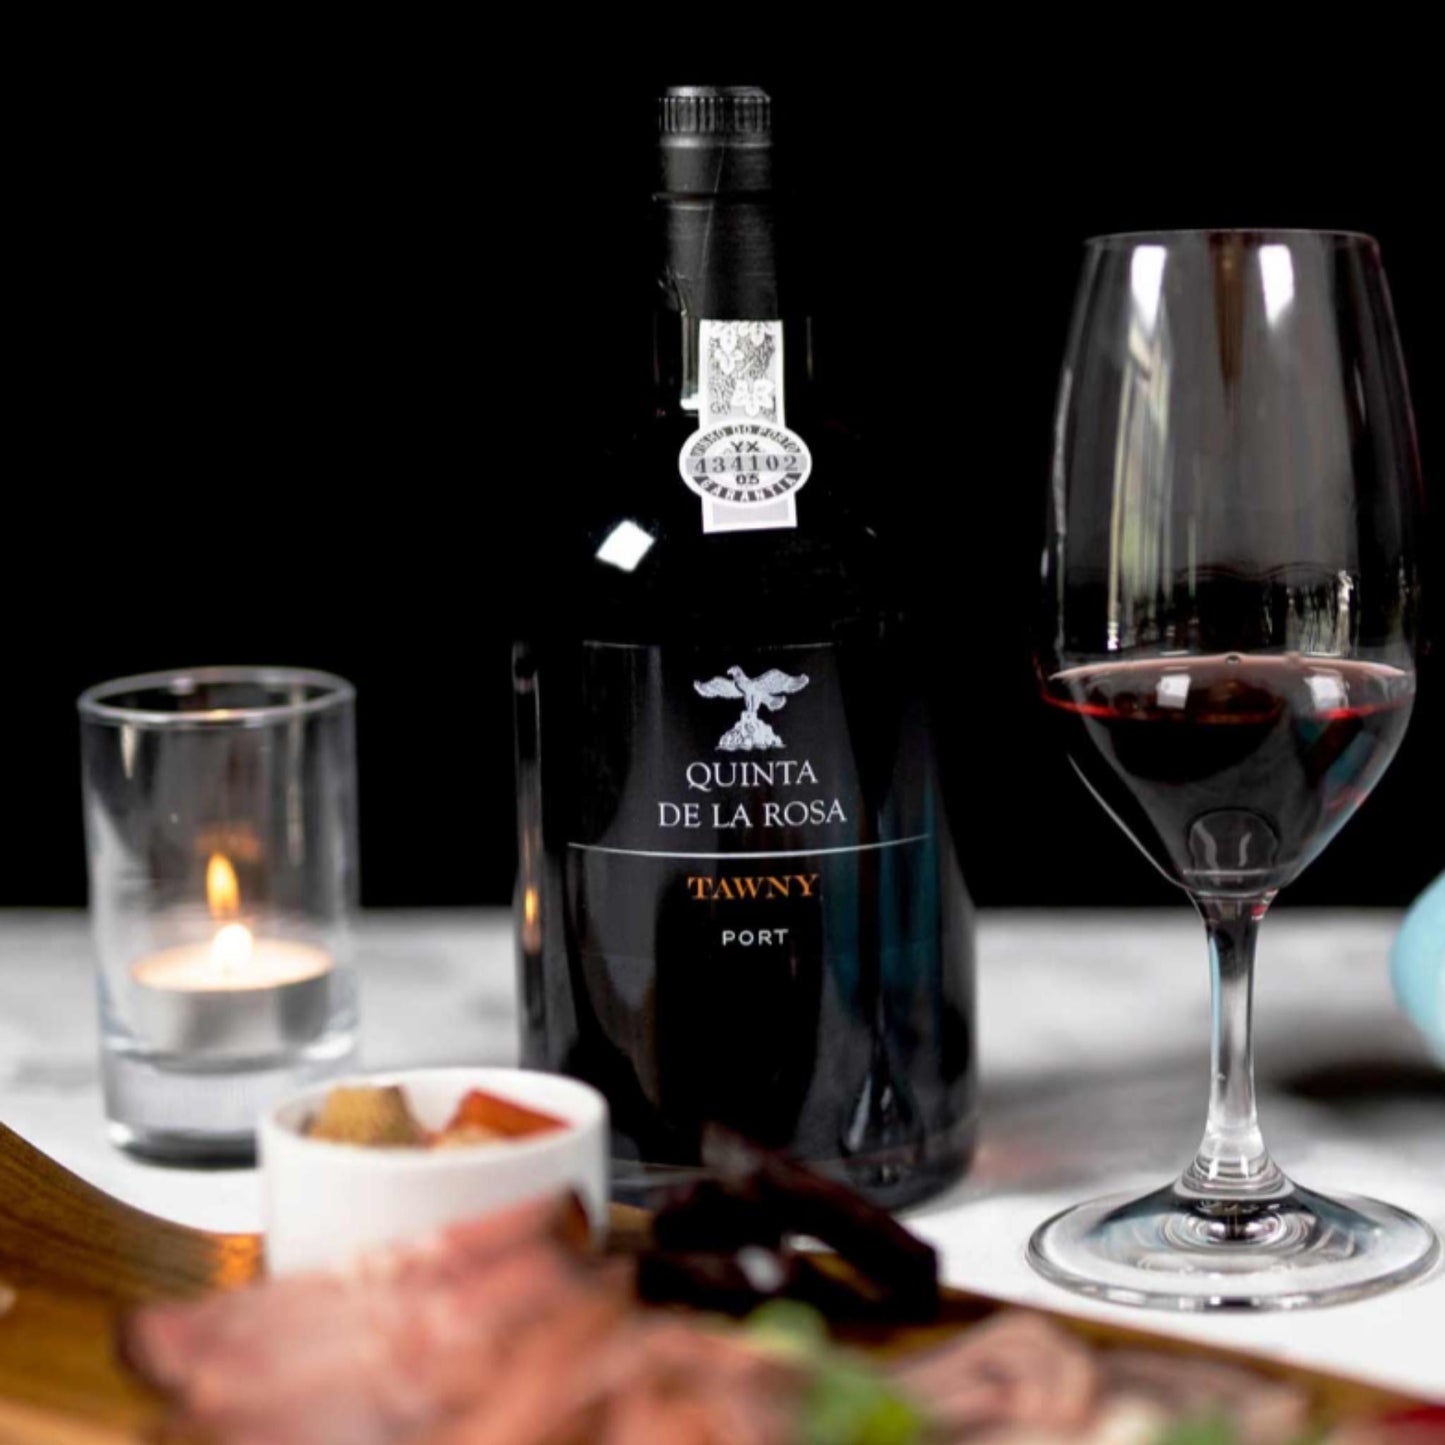 
                  
                    TAWNY PORT, Portwein vom Weingut Quinta de la Rosa. Bild mit Portweinflasche und Portweinglas, daneben eine brennende Kerze und portugiesische Speisen.
                  
                